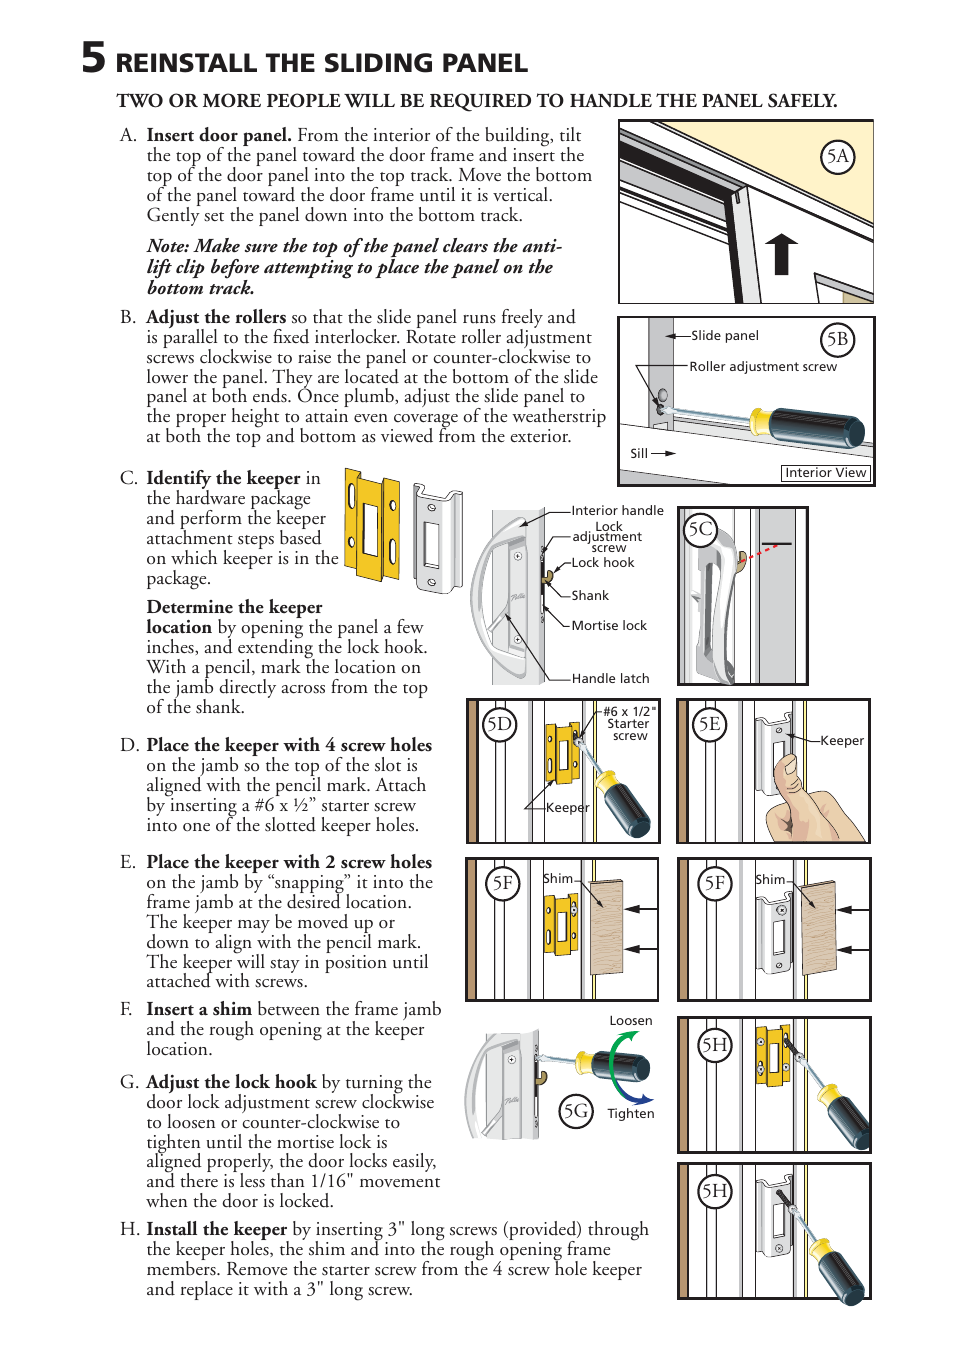 Reinstall the sliding panel Pella Sliding Patio Door V981553 User Manual Page 5 / 9